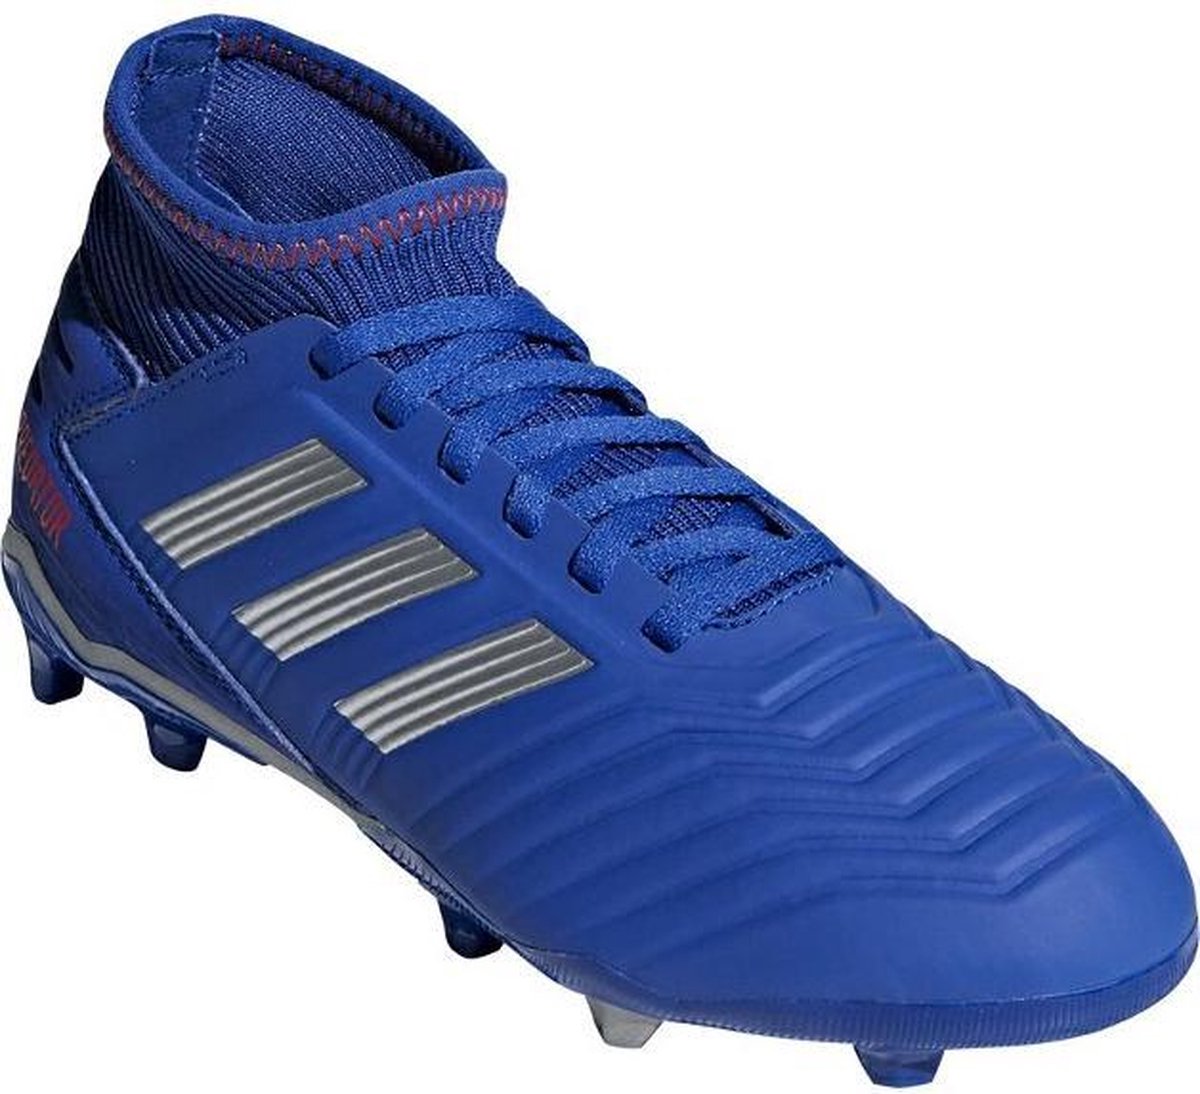 Chaussures de football adidas Predator 19.3 FG garçon bleu | bol.com